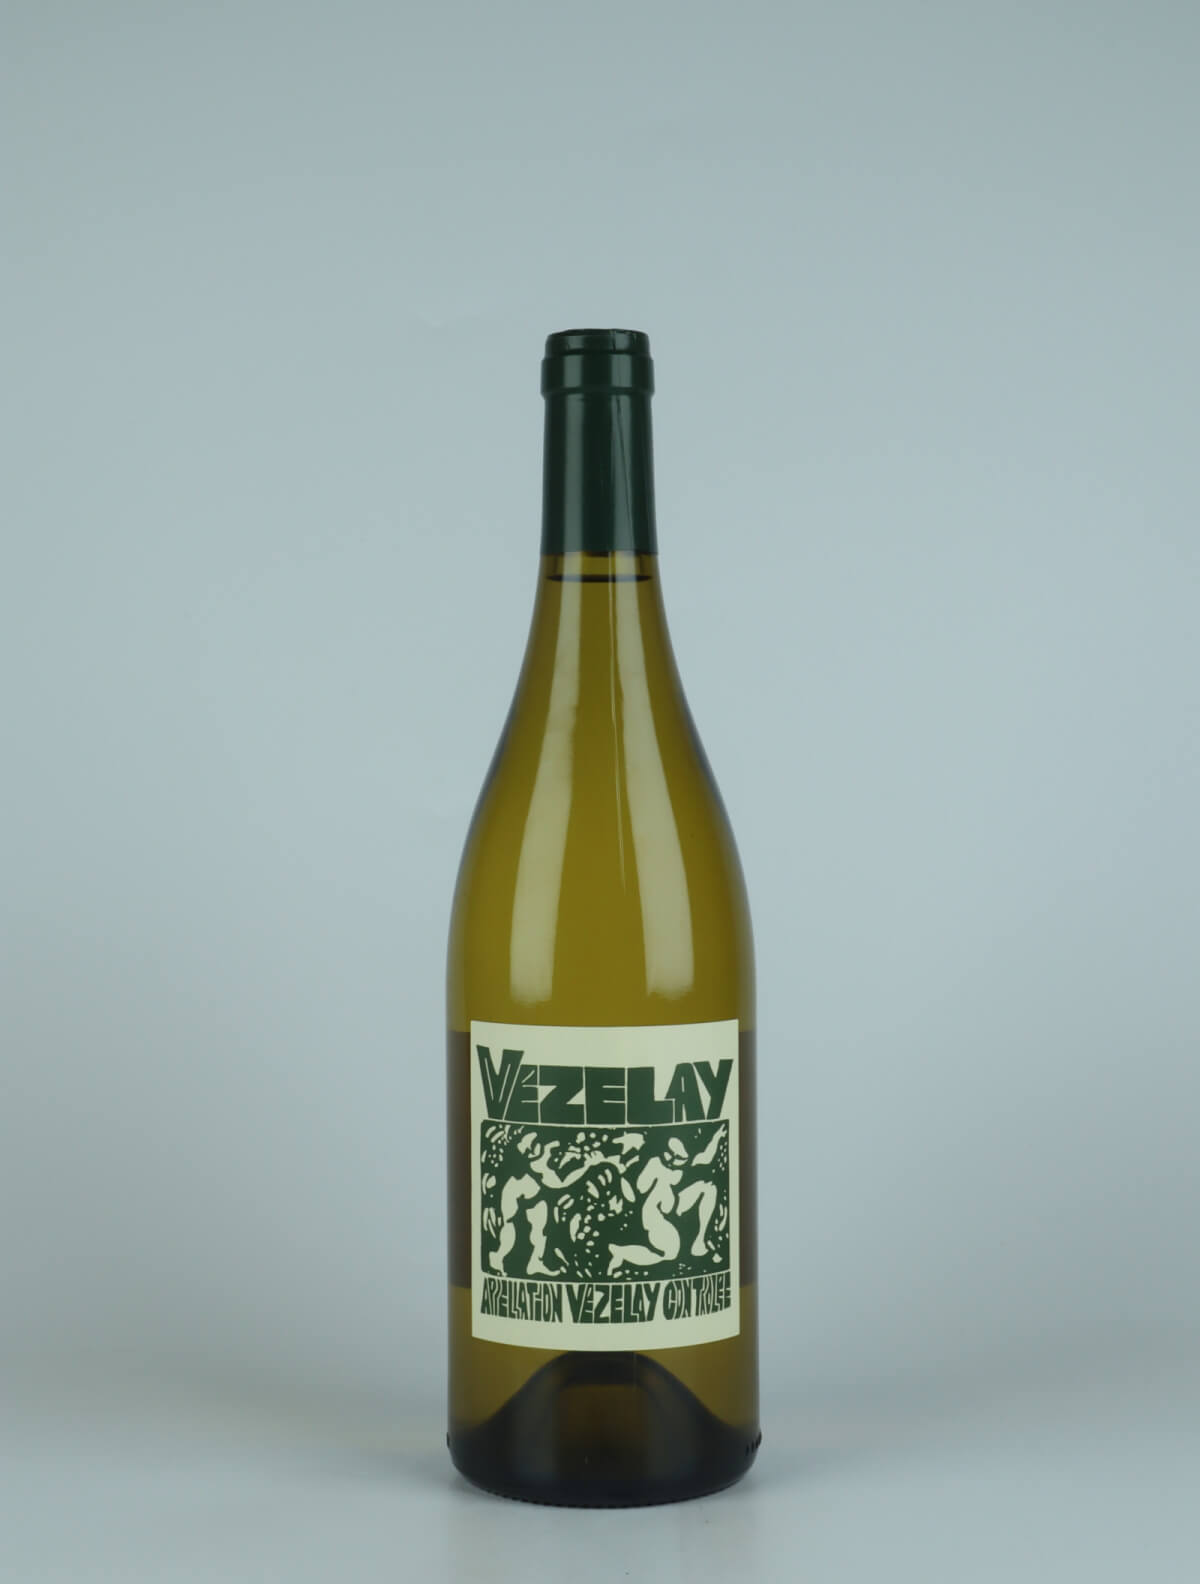 A bottle 2021 Bourgogne Vézelay White wine from La Sœur Cadette, Burgundy in France